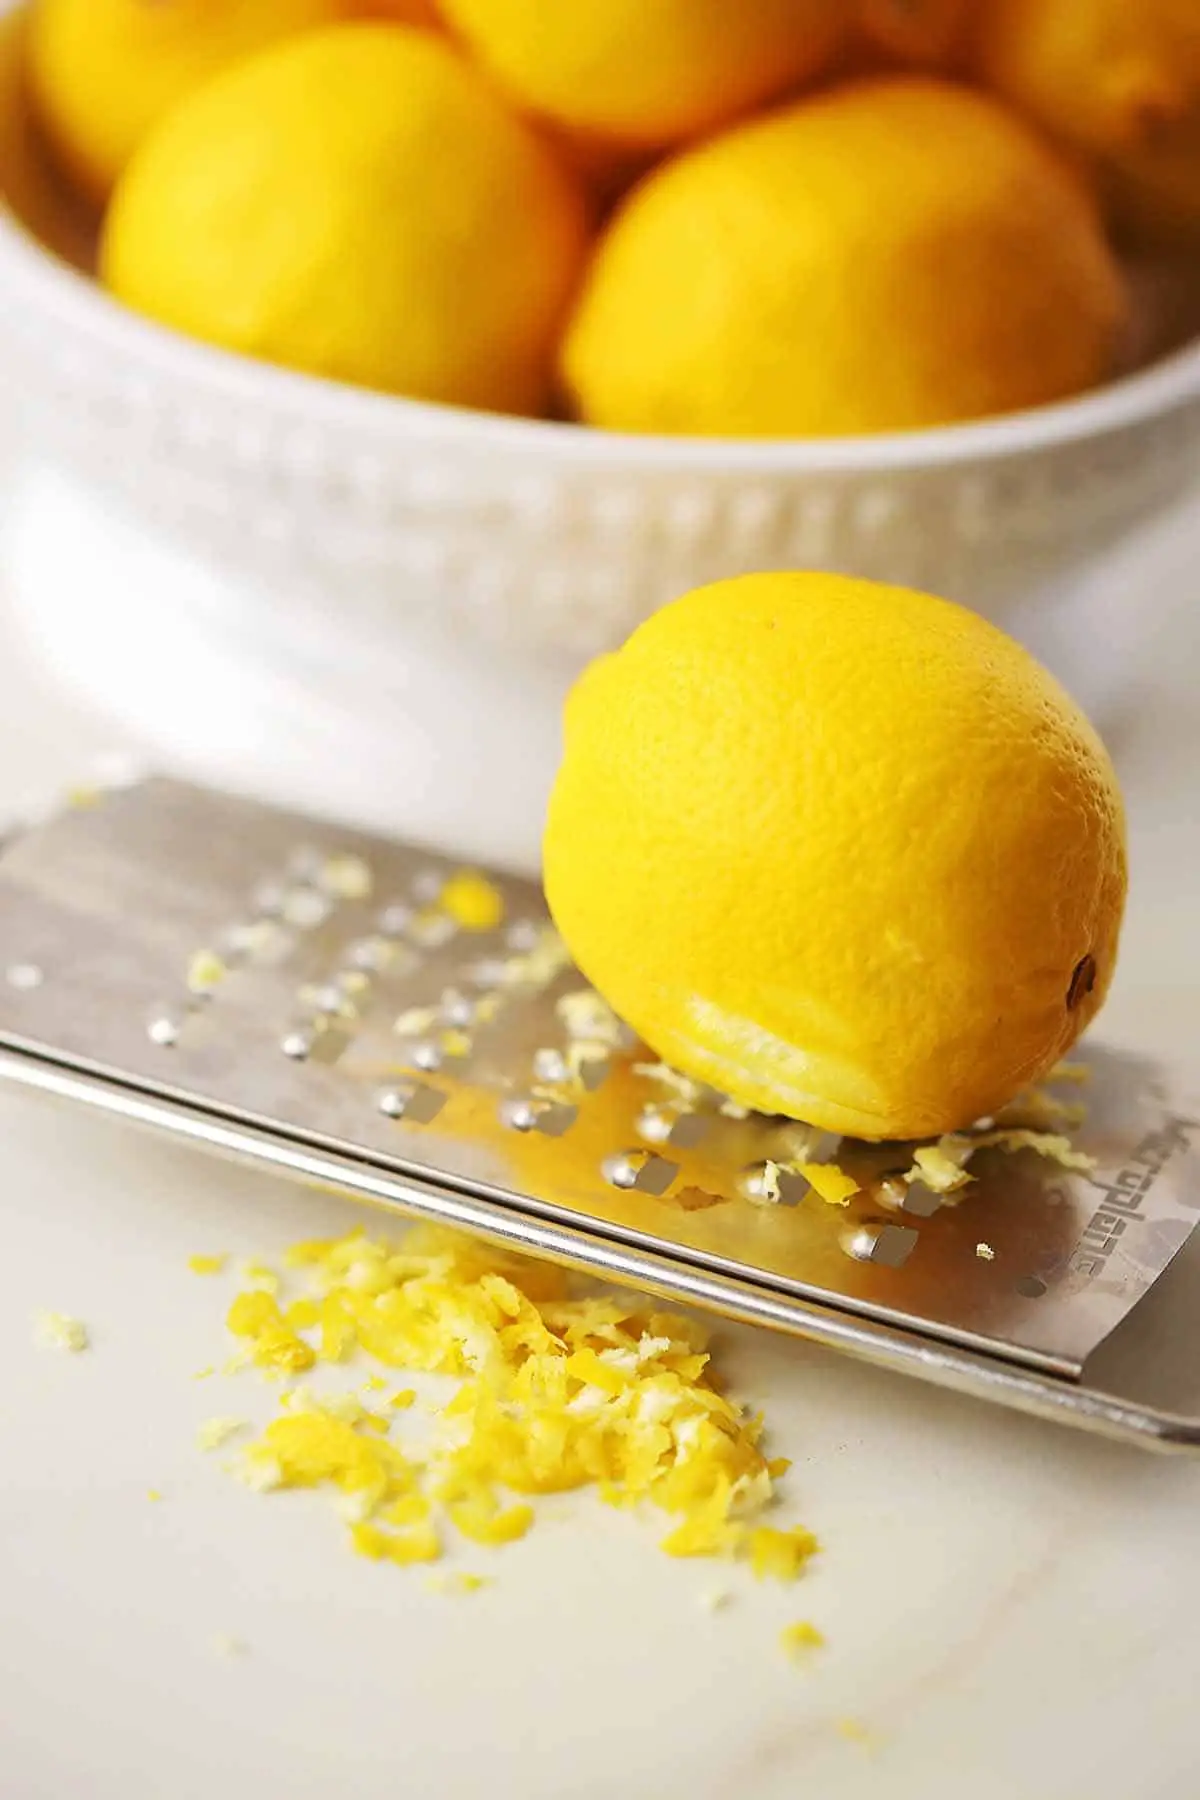 Sustituto de ralladura de limón - Flavorful Home